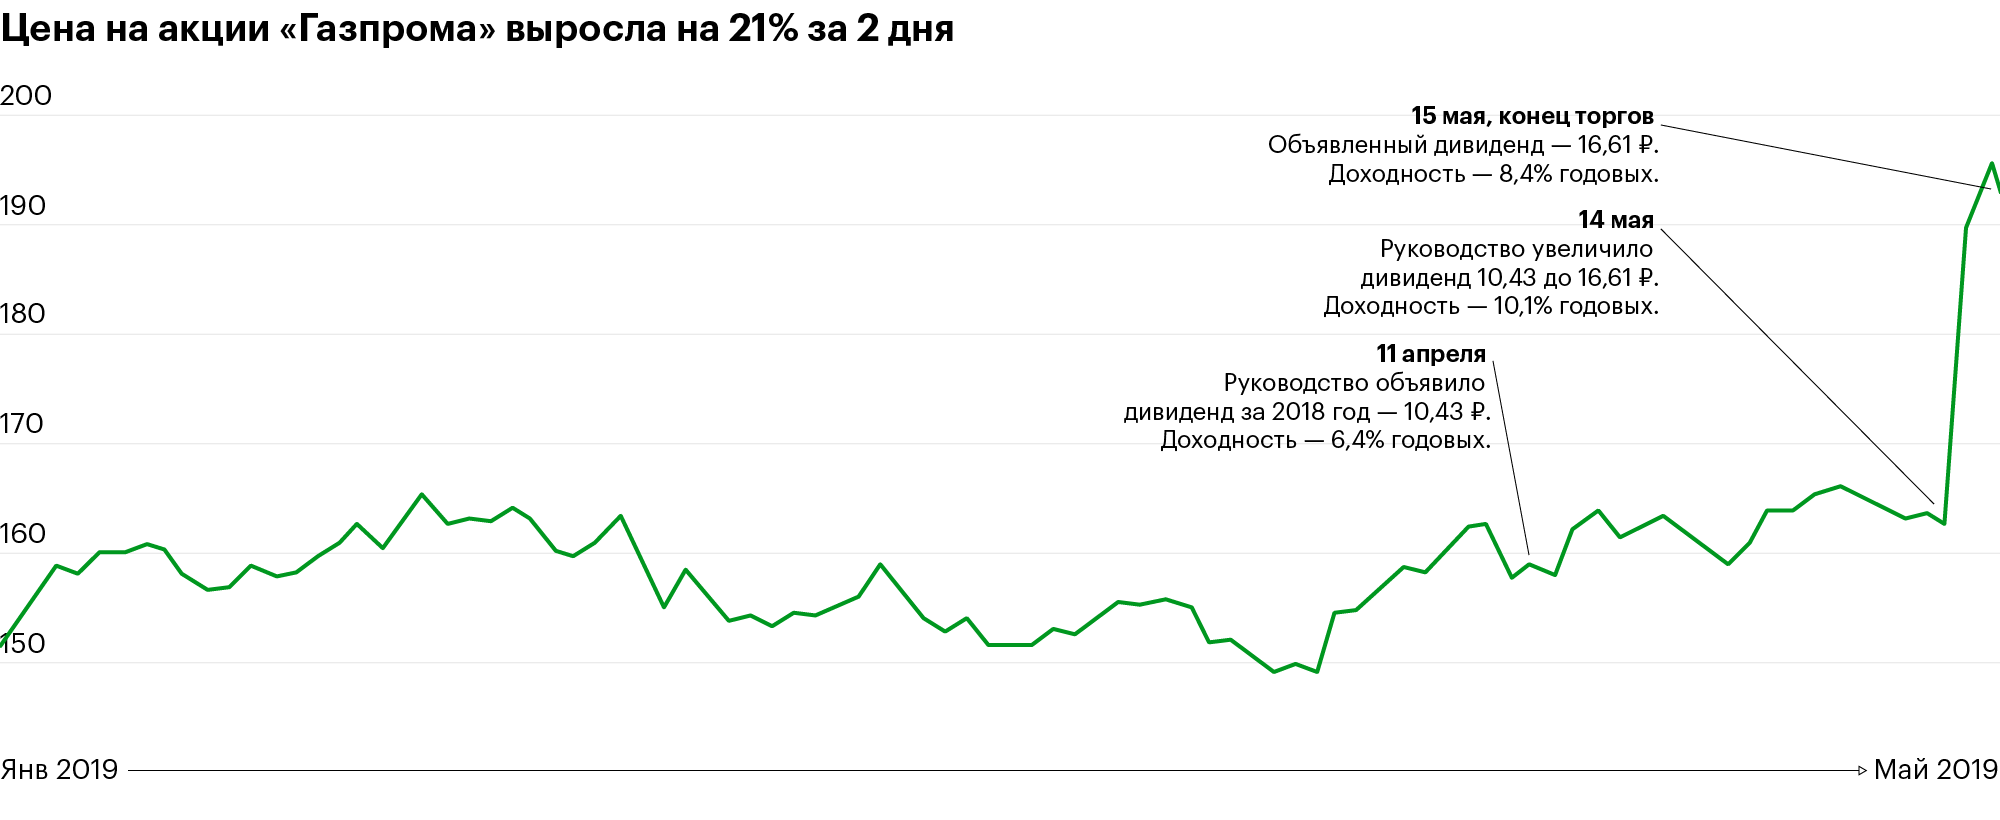 Акции «Газпрома» взлетели на 21%. Что происходит и что делать